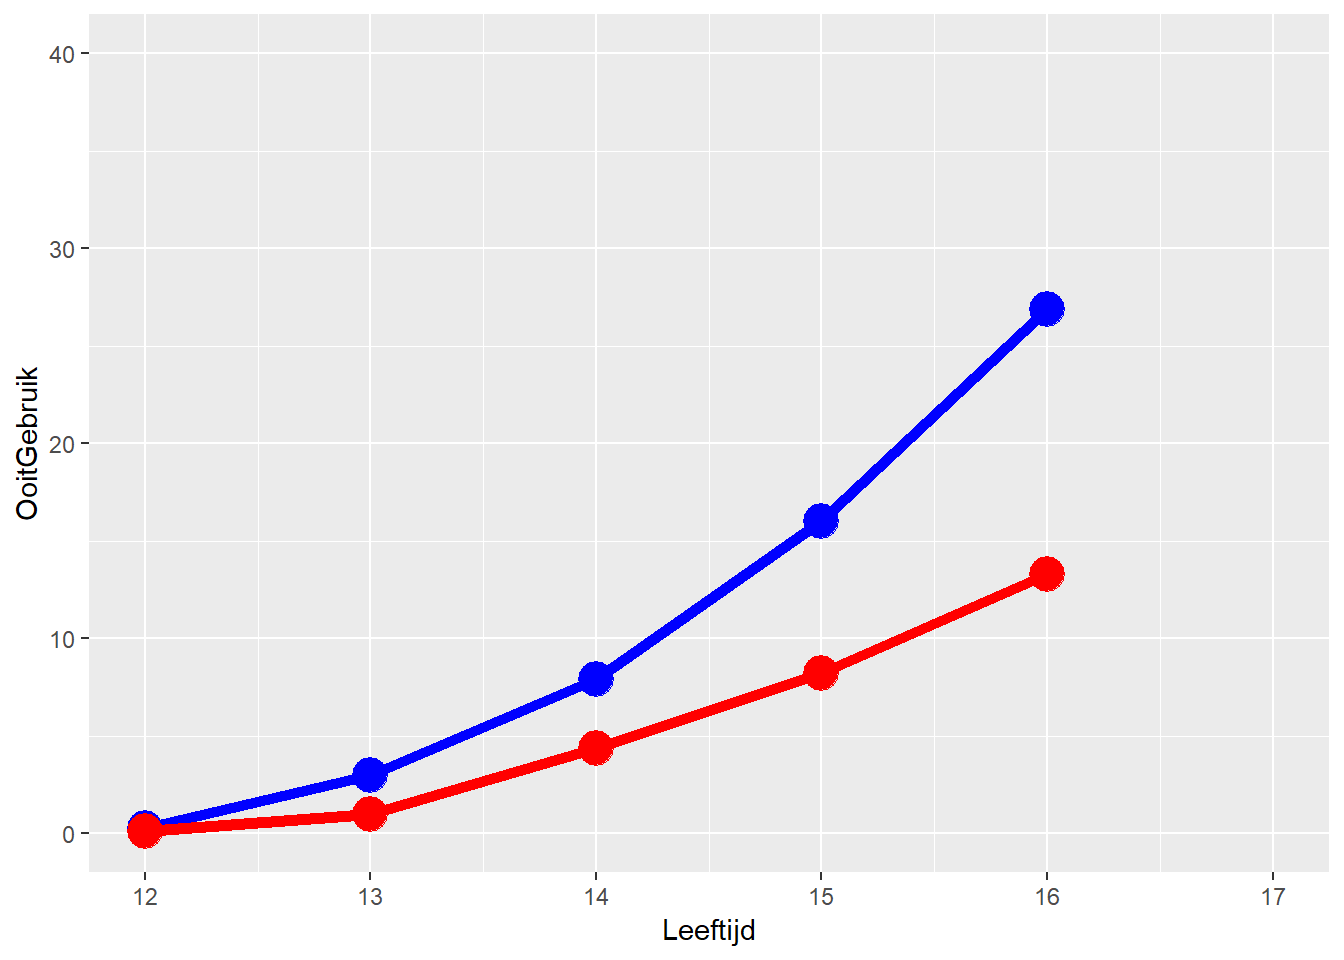 Grafiek van leeftijd en maand-gebruik van cannabis ^[Zoals net: zie boven de voetnoten voor de R code.]